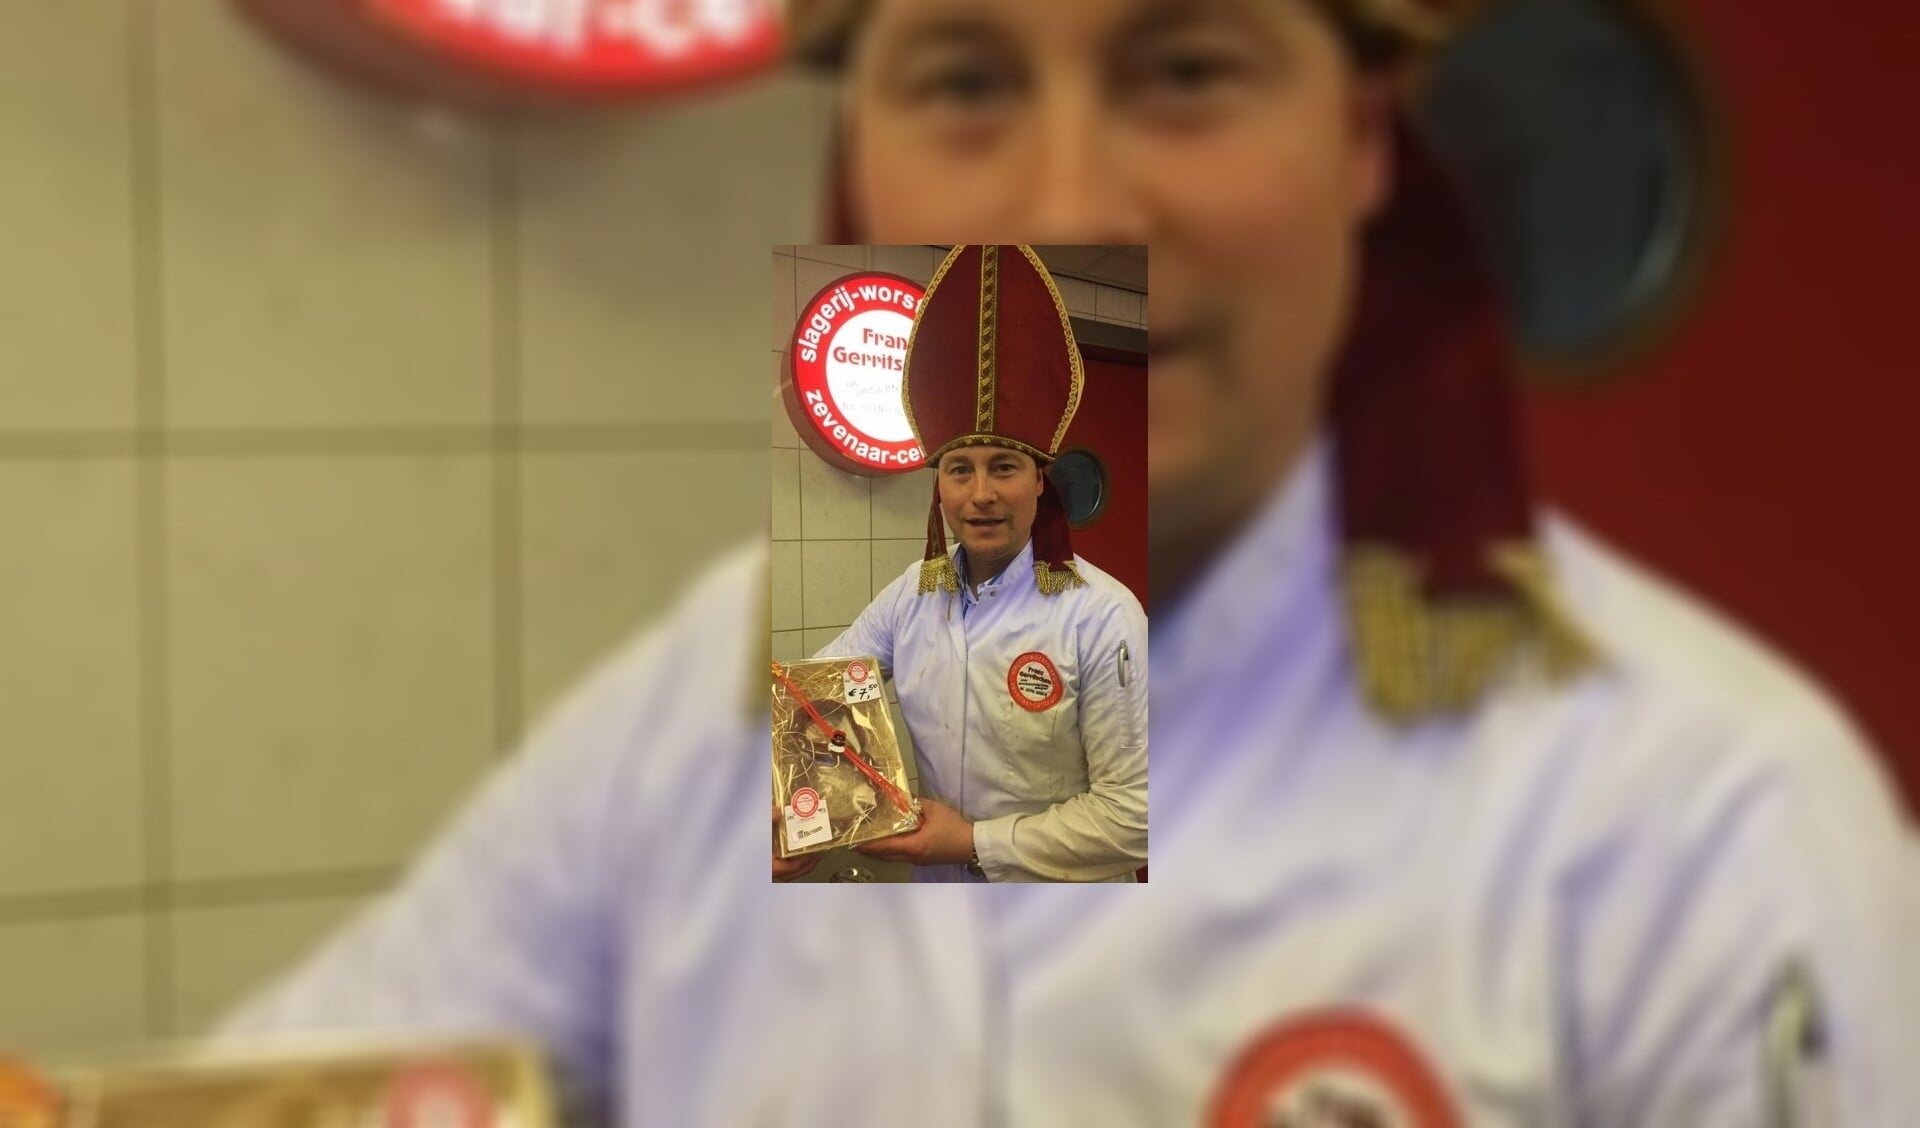 Is het nou Sinterklaas of slager Franz? Wat wel zeker is, is dat de vleesletter overheerlijk is. (foto: PR) 